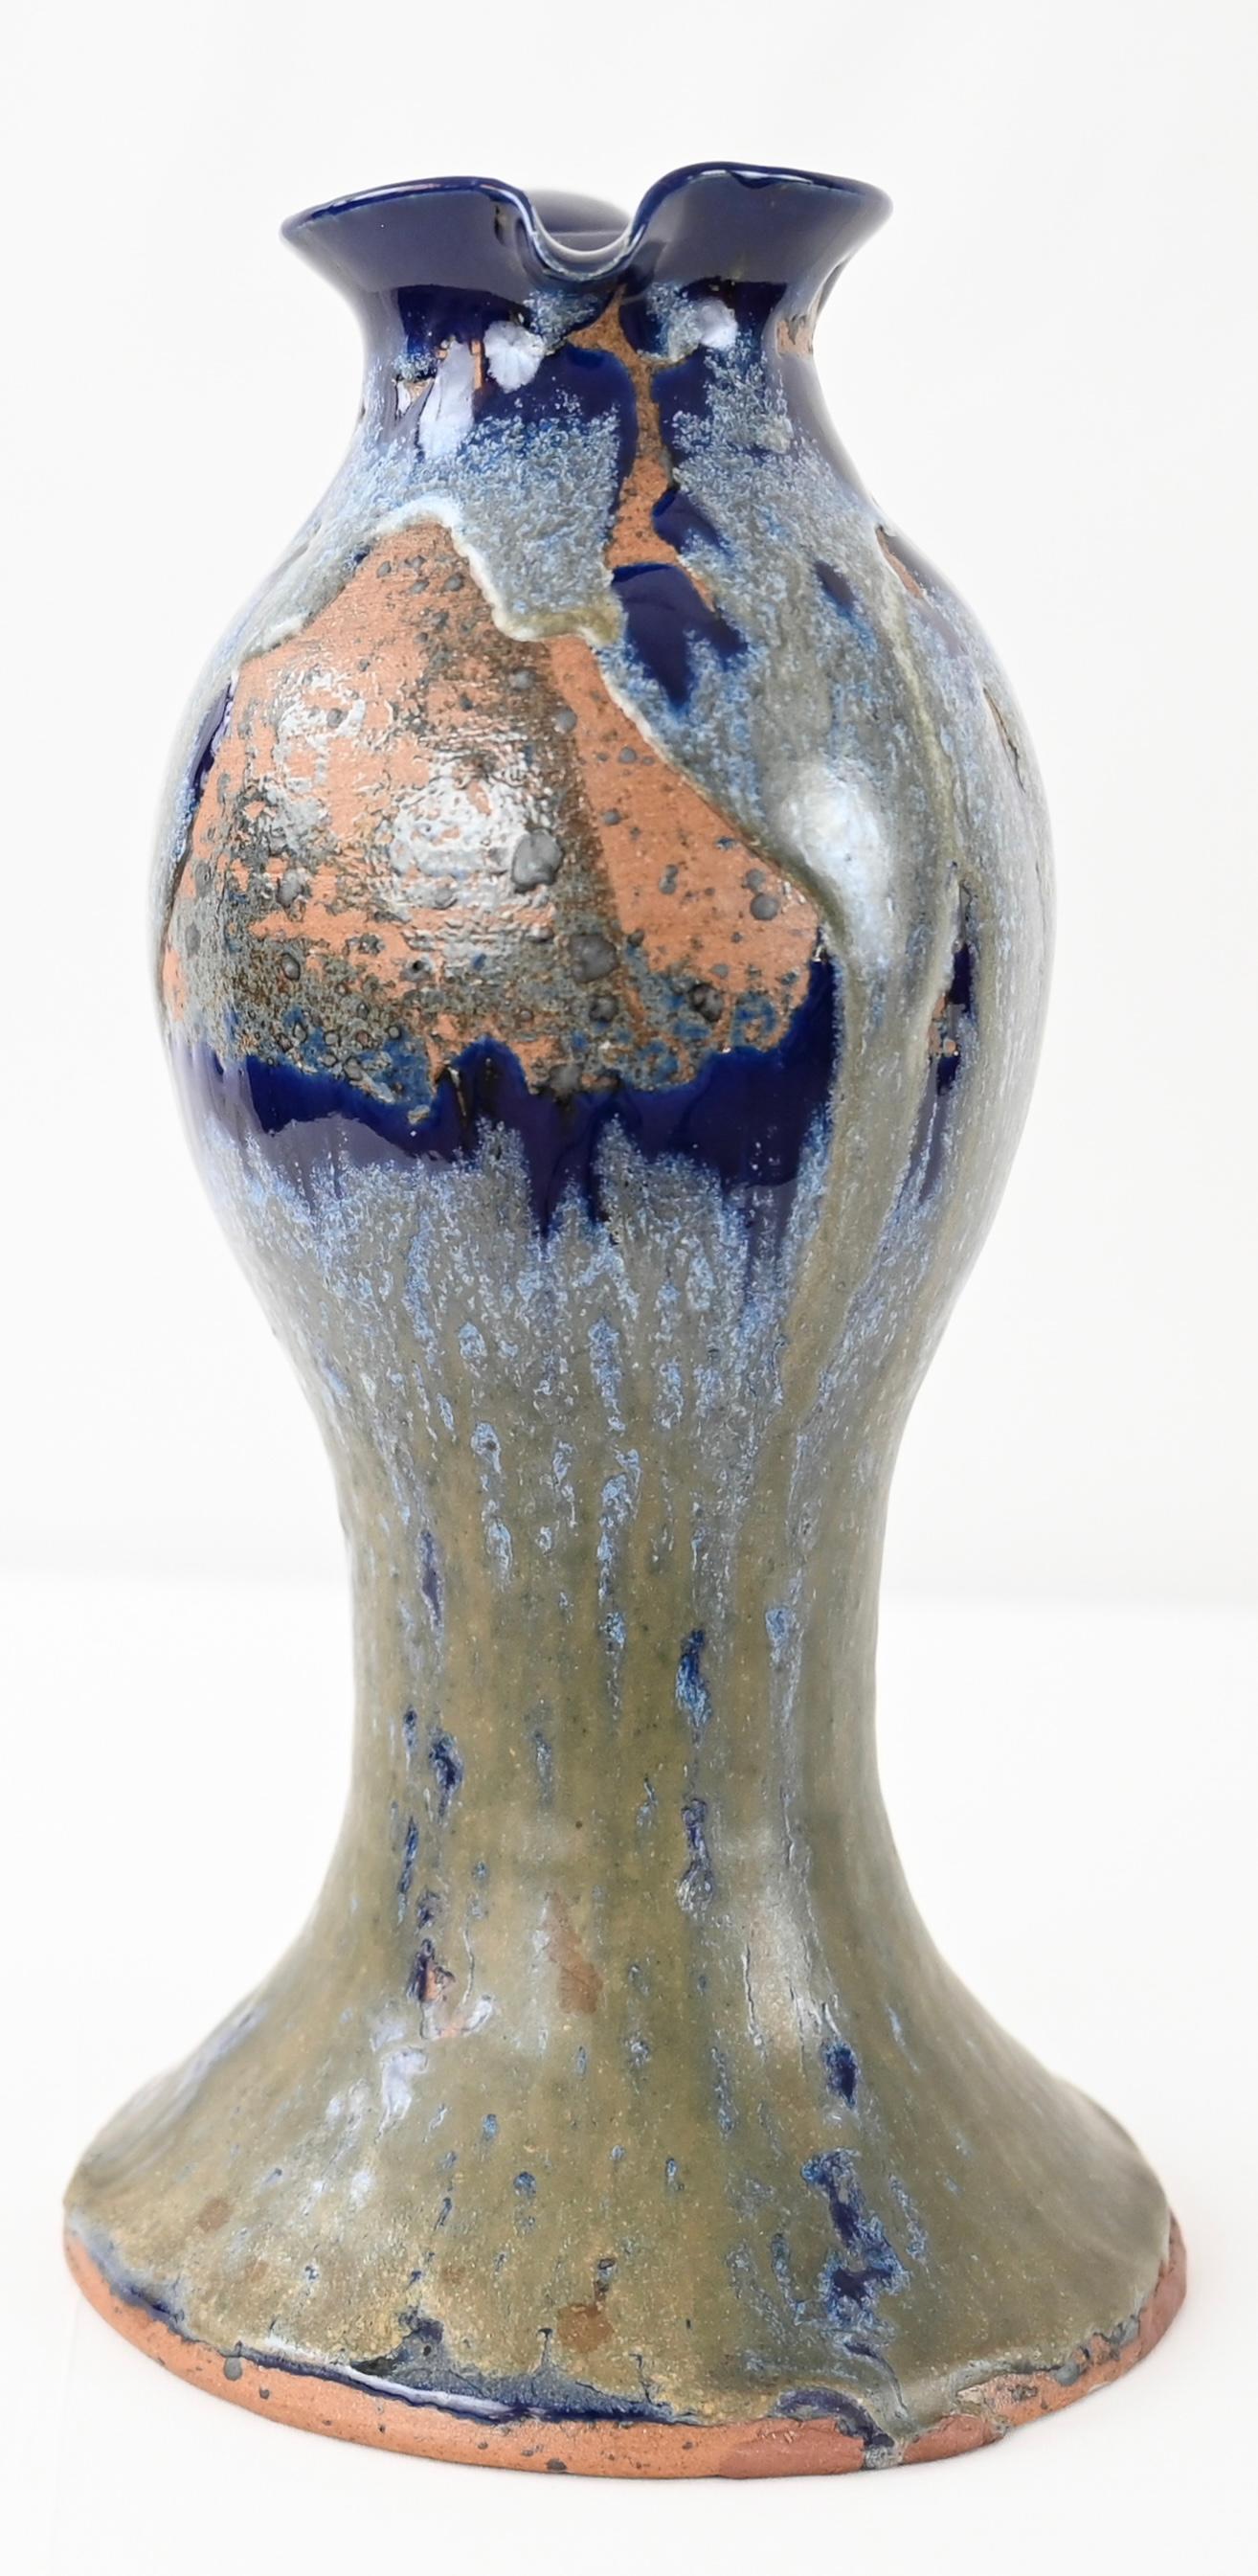 Diese wunderschön in Blau-, Grau-, Weiß- und Korallentönen glasierte Vase in Krugform hat eine klassische, französische Jugendstil-Silhouette. Dieses Stück wurde in Frankreich nach traditionellen Töpfertechniken handgefertigt. Charles Greber